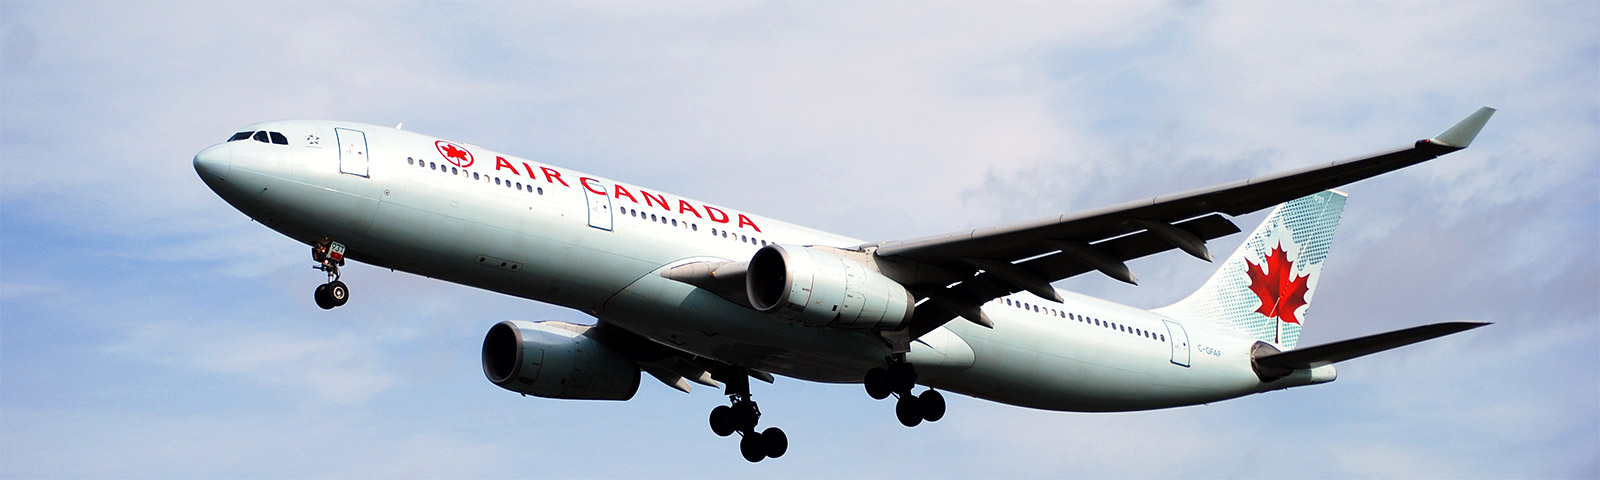 aeroplano in decollo della compagnia air canada